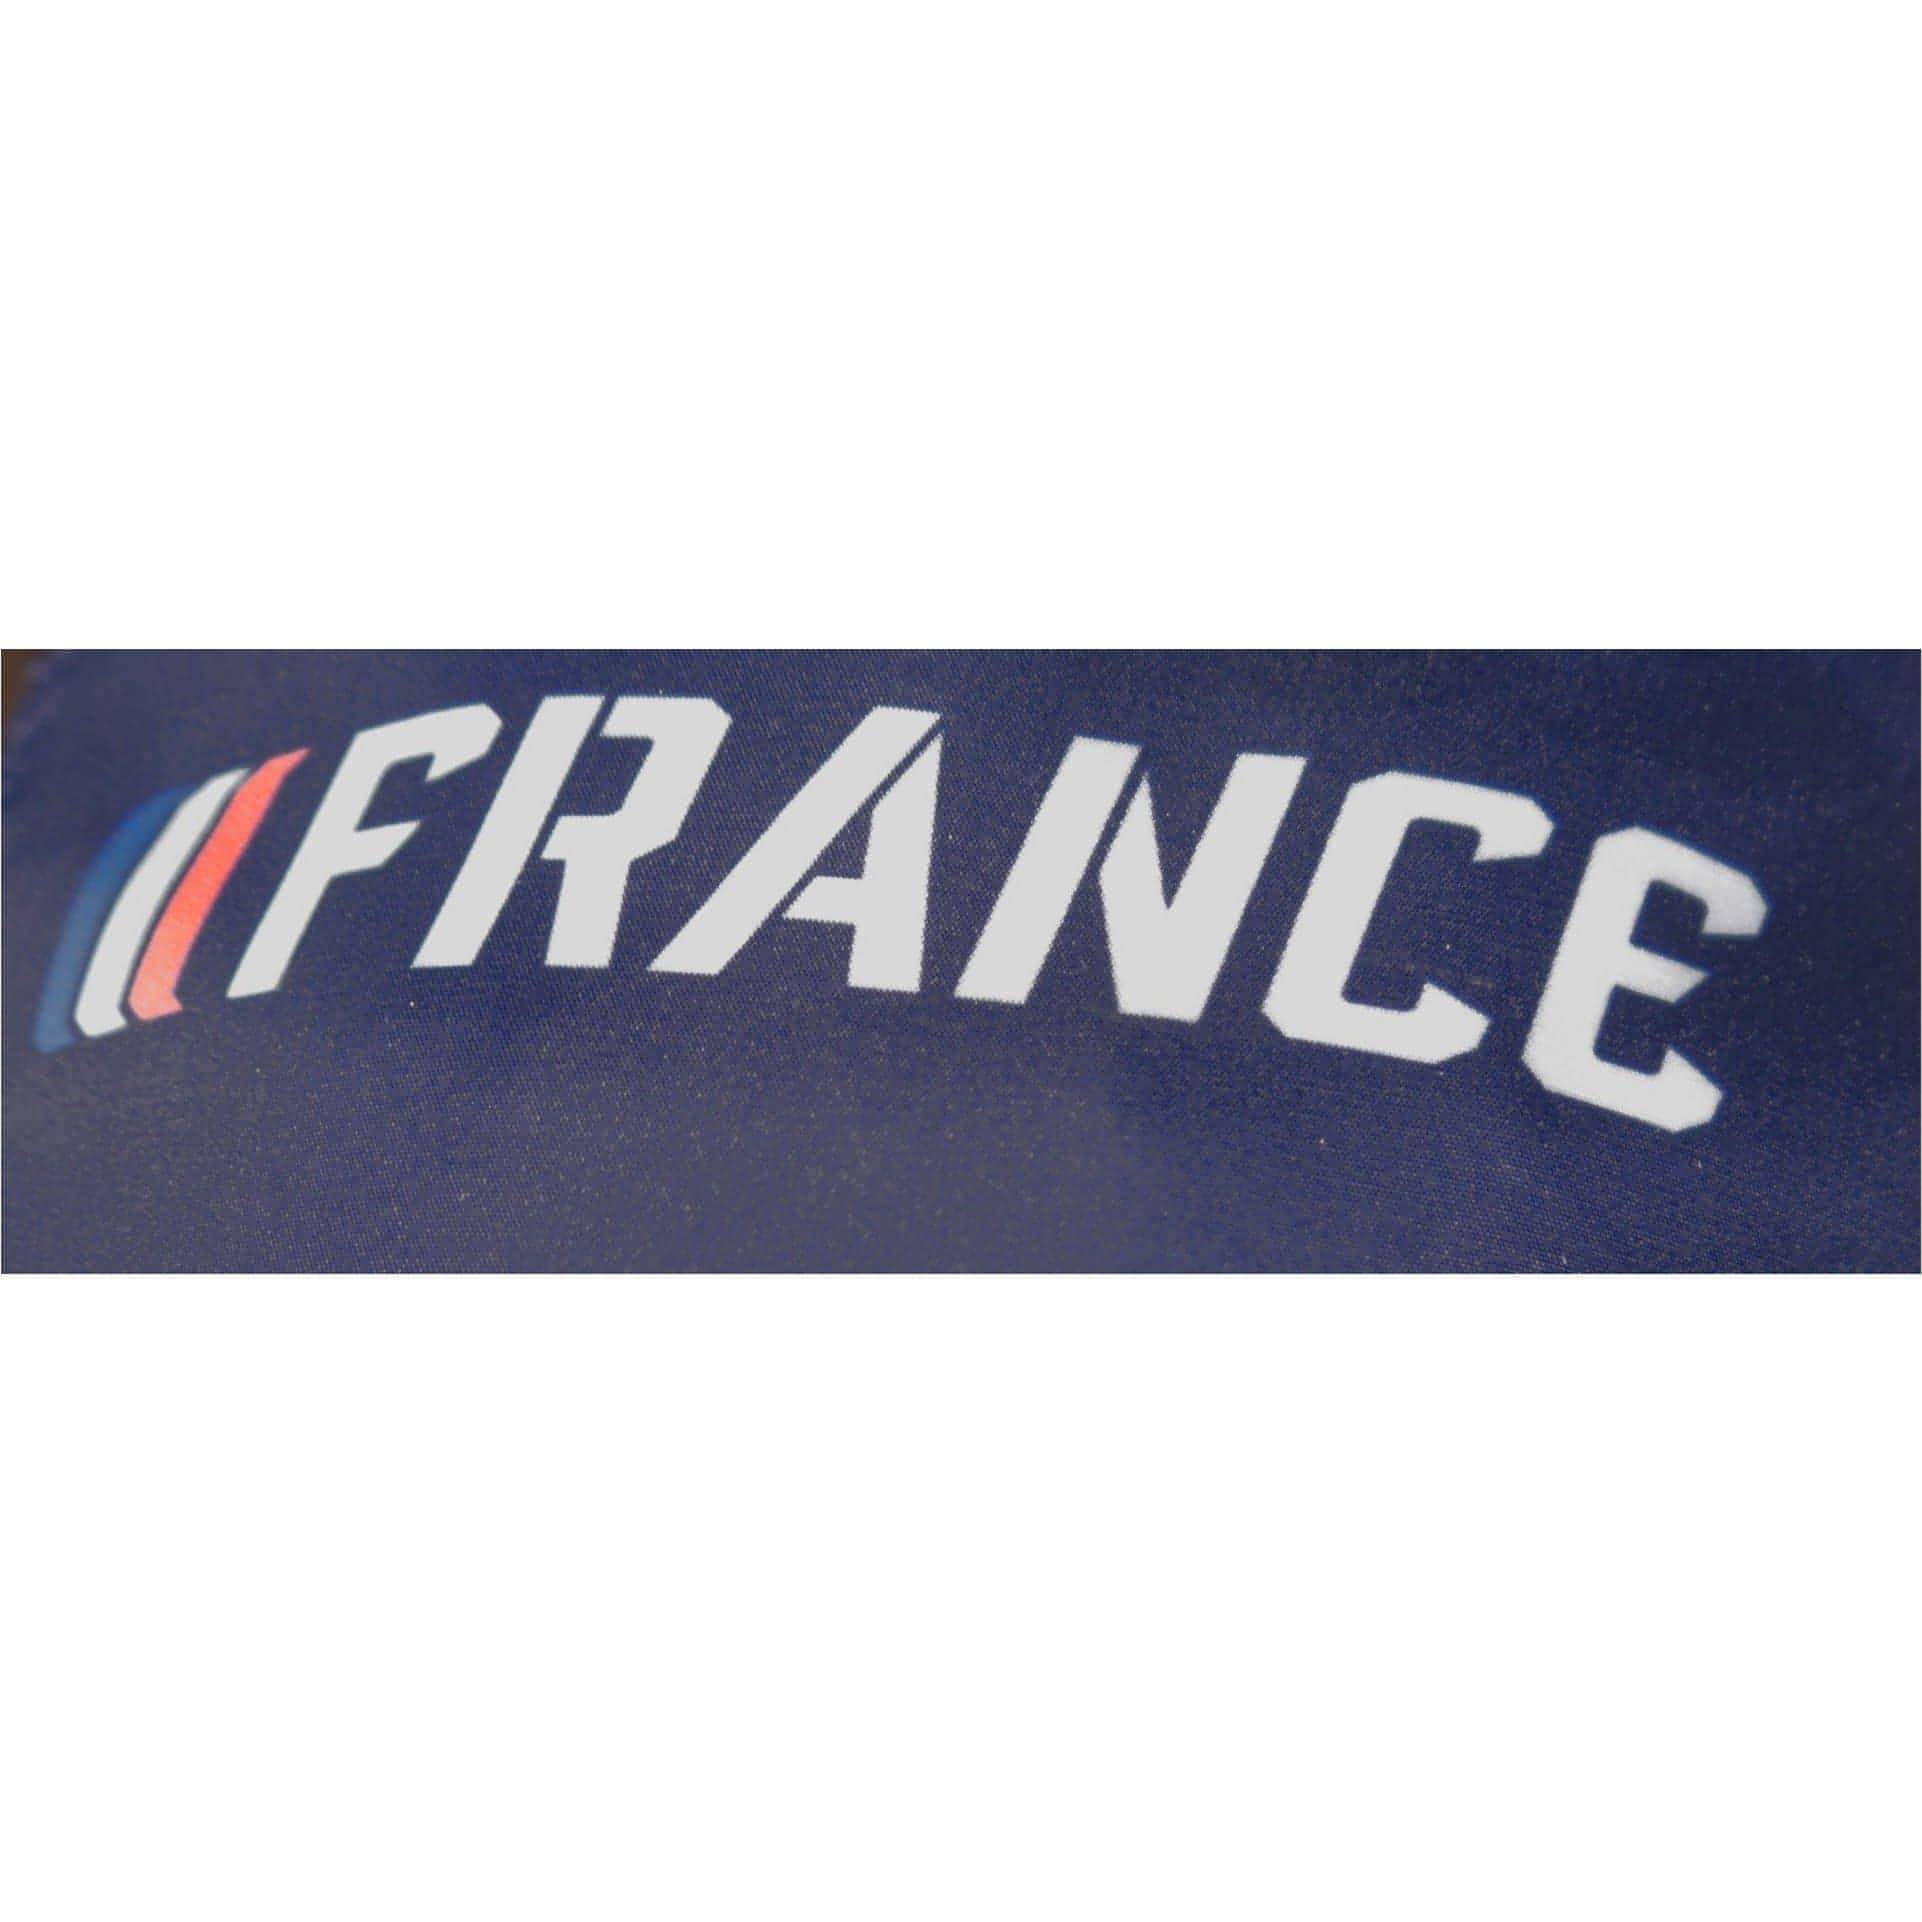 Asics France Running Cap - Navy 5054977035164 - Start Fitness